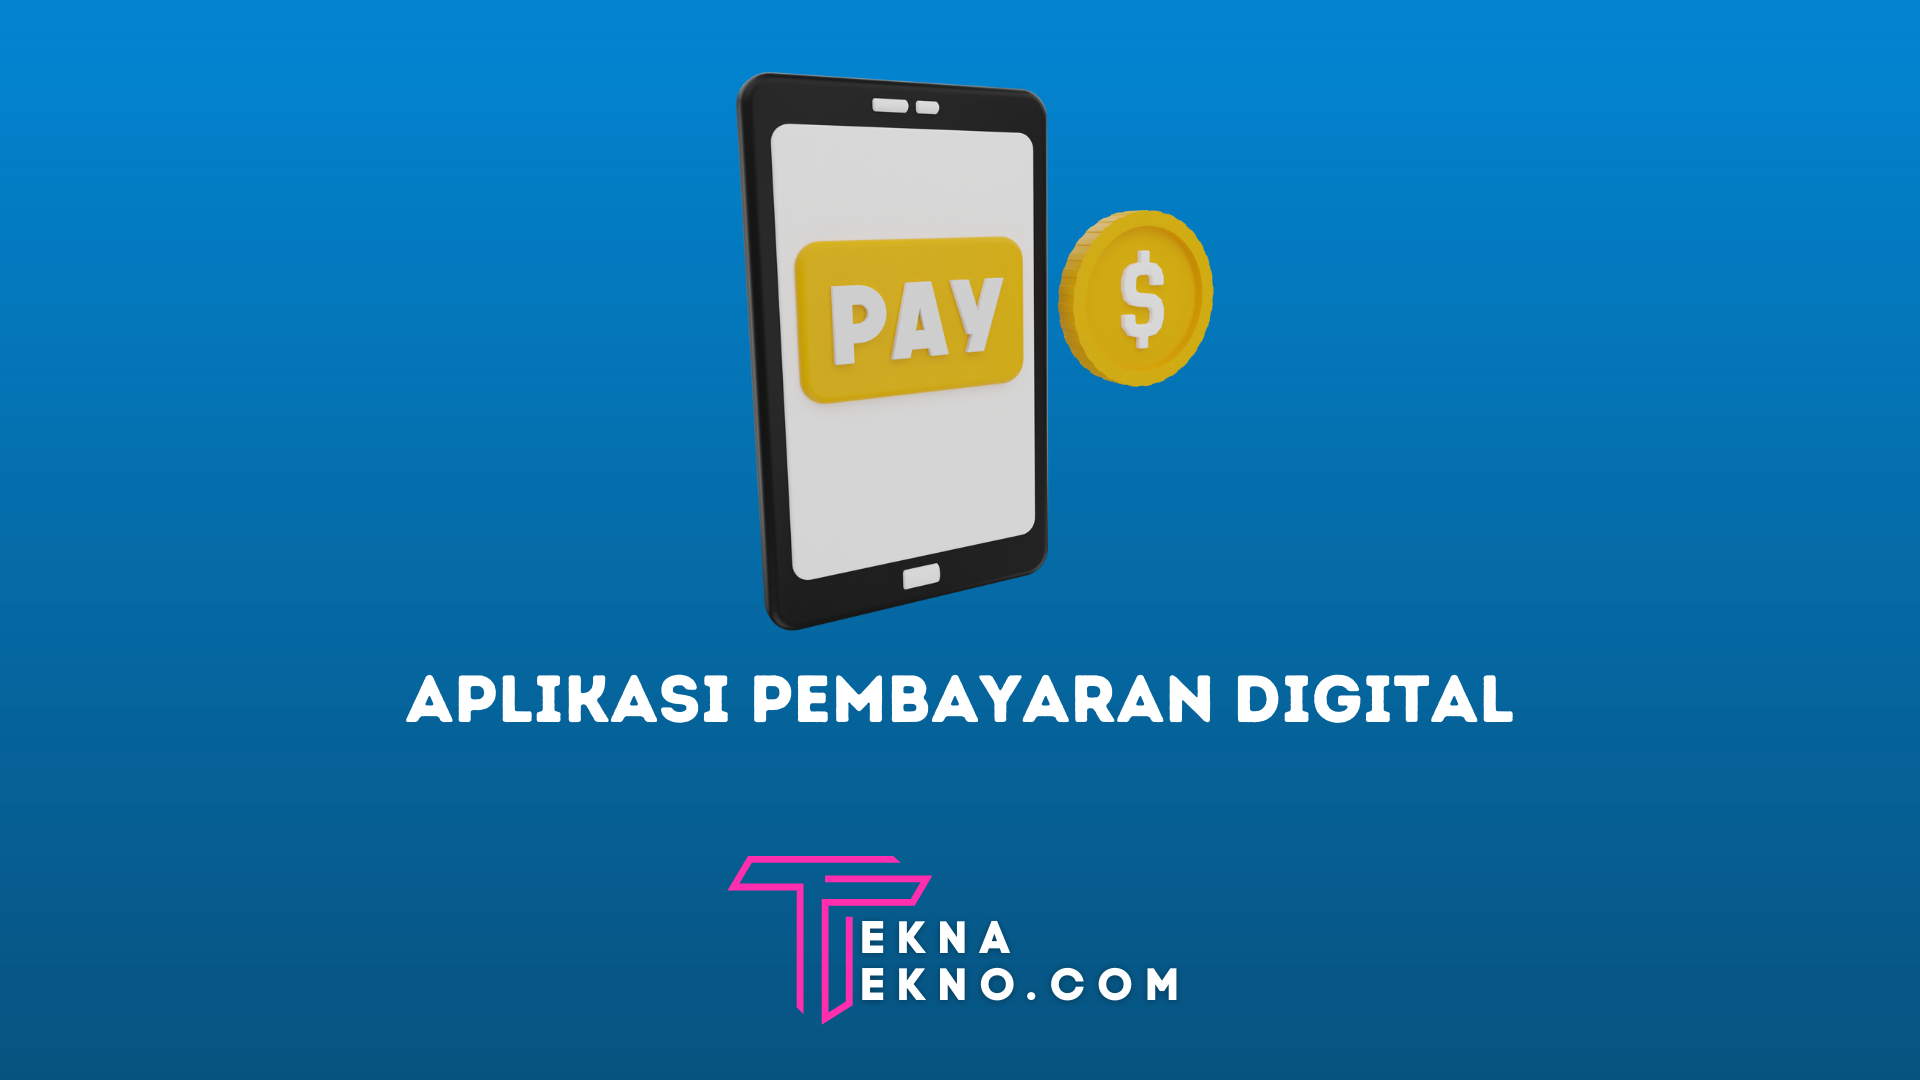 10 Aplikasi Pembayaran Digital Terpopuler di Indonesia Saat Ini Untuk Android